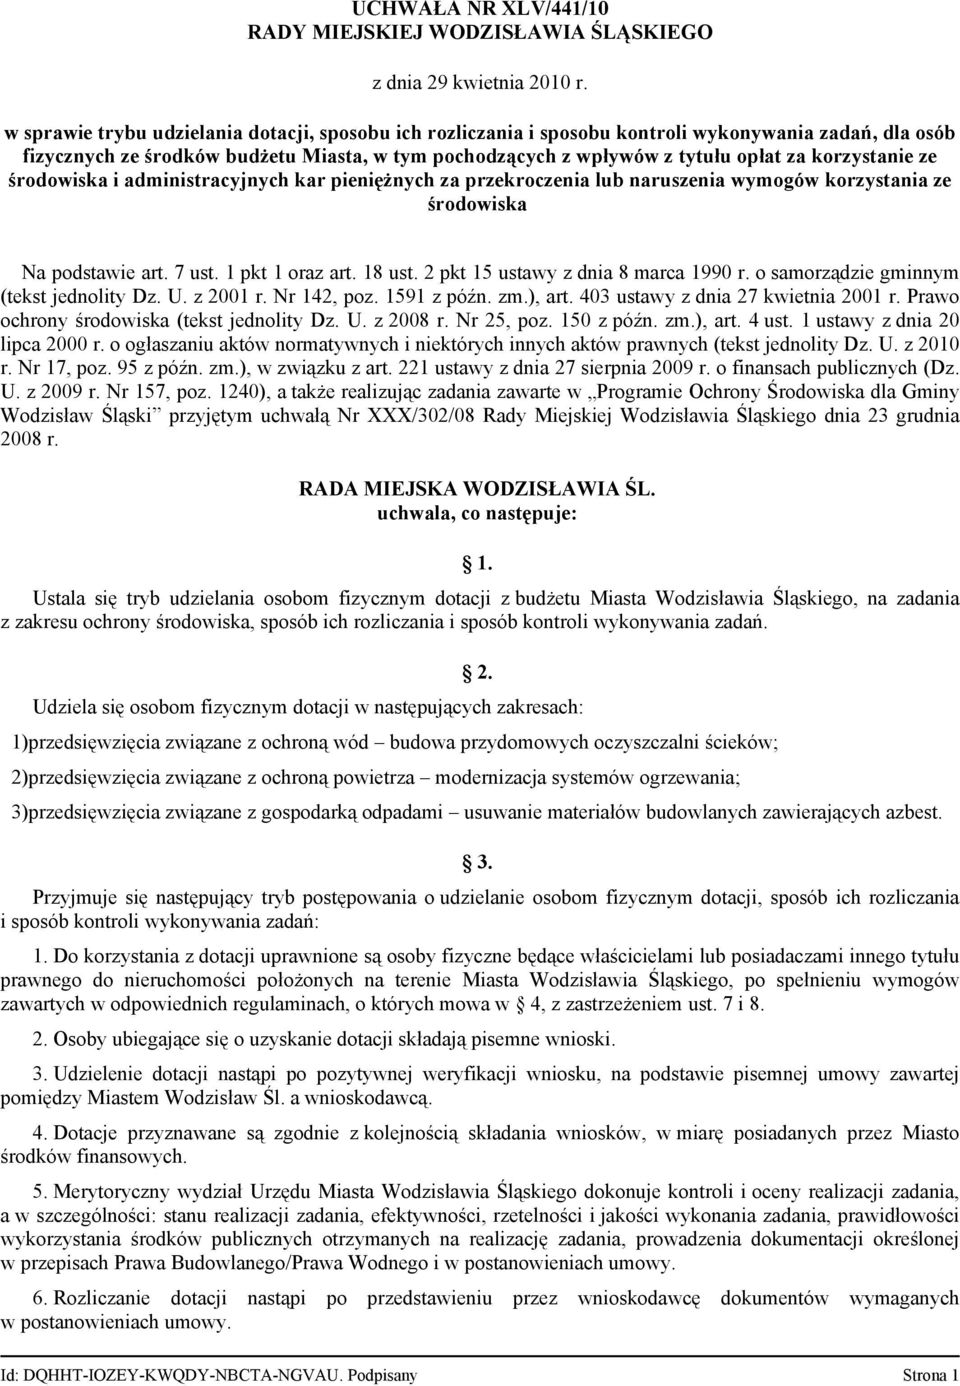 7 ust. 1 pkt 1 oraz art. 18 ust. 2 pkt 15 ustawy z dnia 8 marca 1990 r. o samorządzie gminnym (tekst jednolity Dz. U. z 2001 r. Nr 142, poz. 1591 z późn. zm.), art.